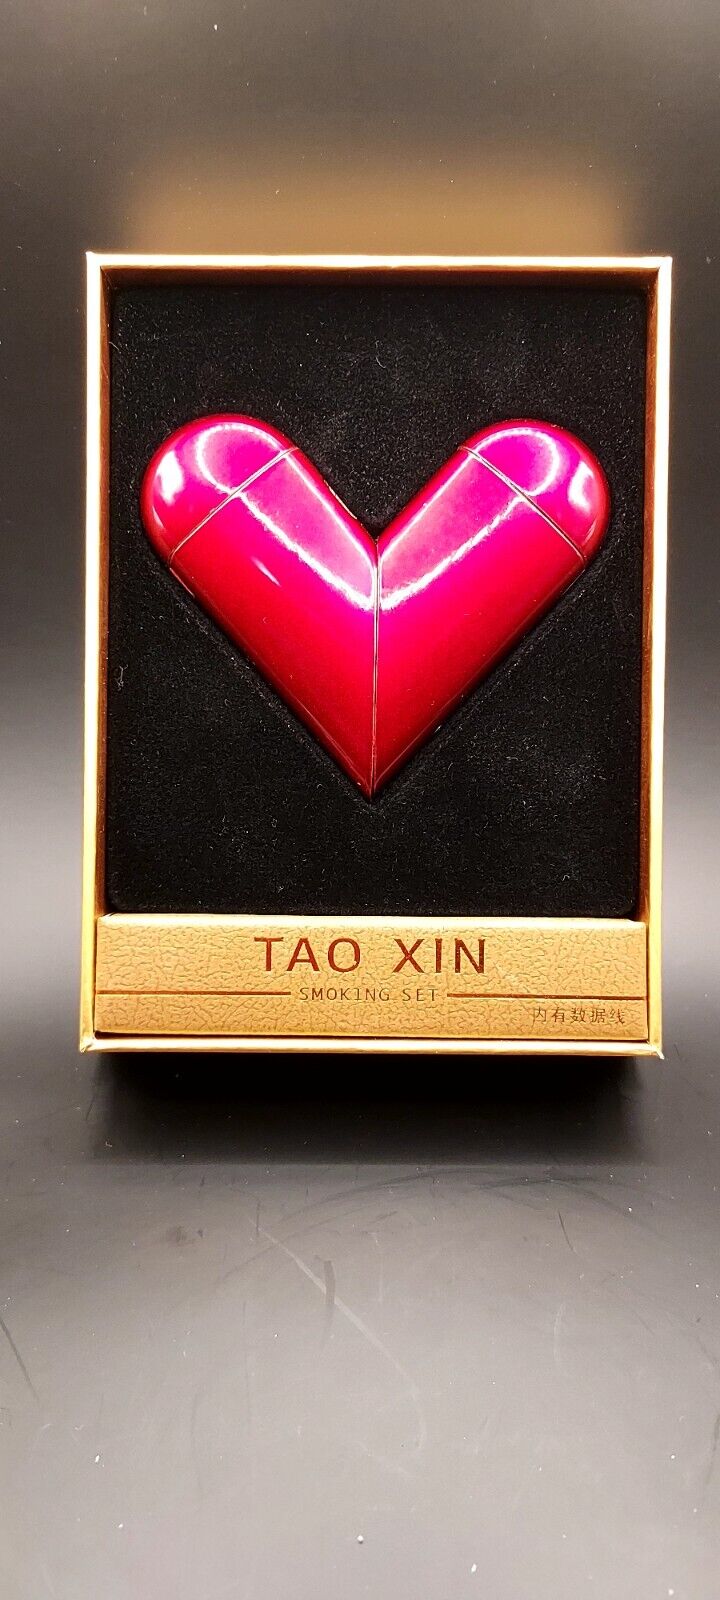 Tao Xin Smoking Set Red Heart Dual Lighter